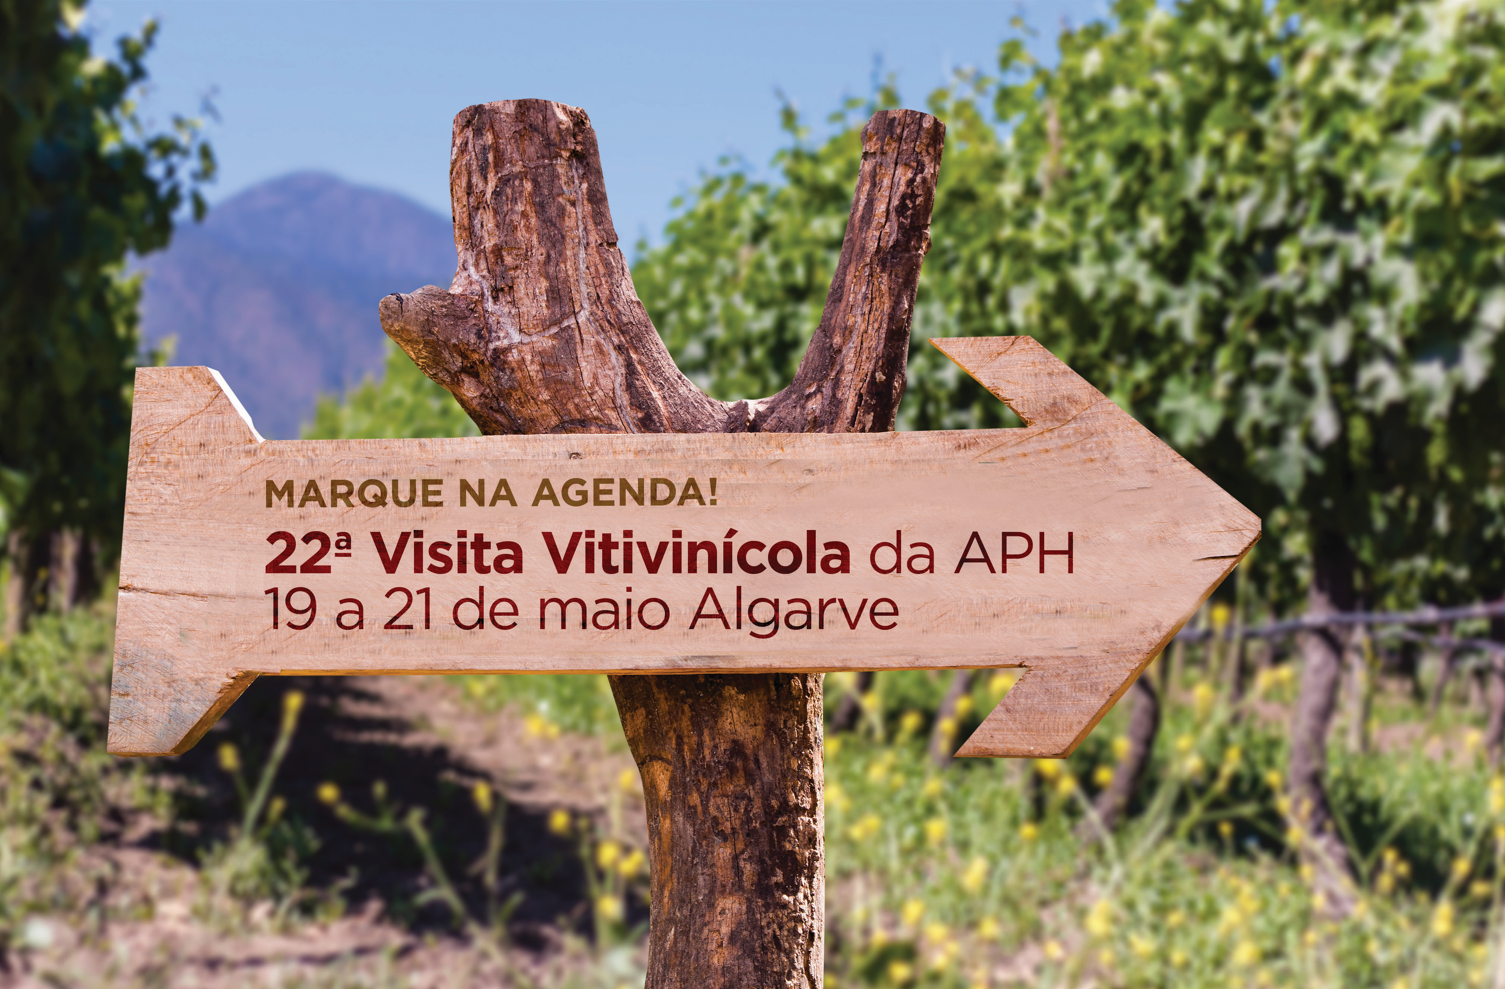 <strong>Descubra os vinhos do Algarve na 22ª Visita Vitivinícola da APH</strong>